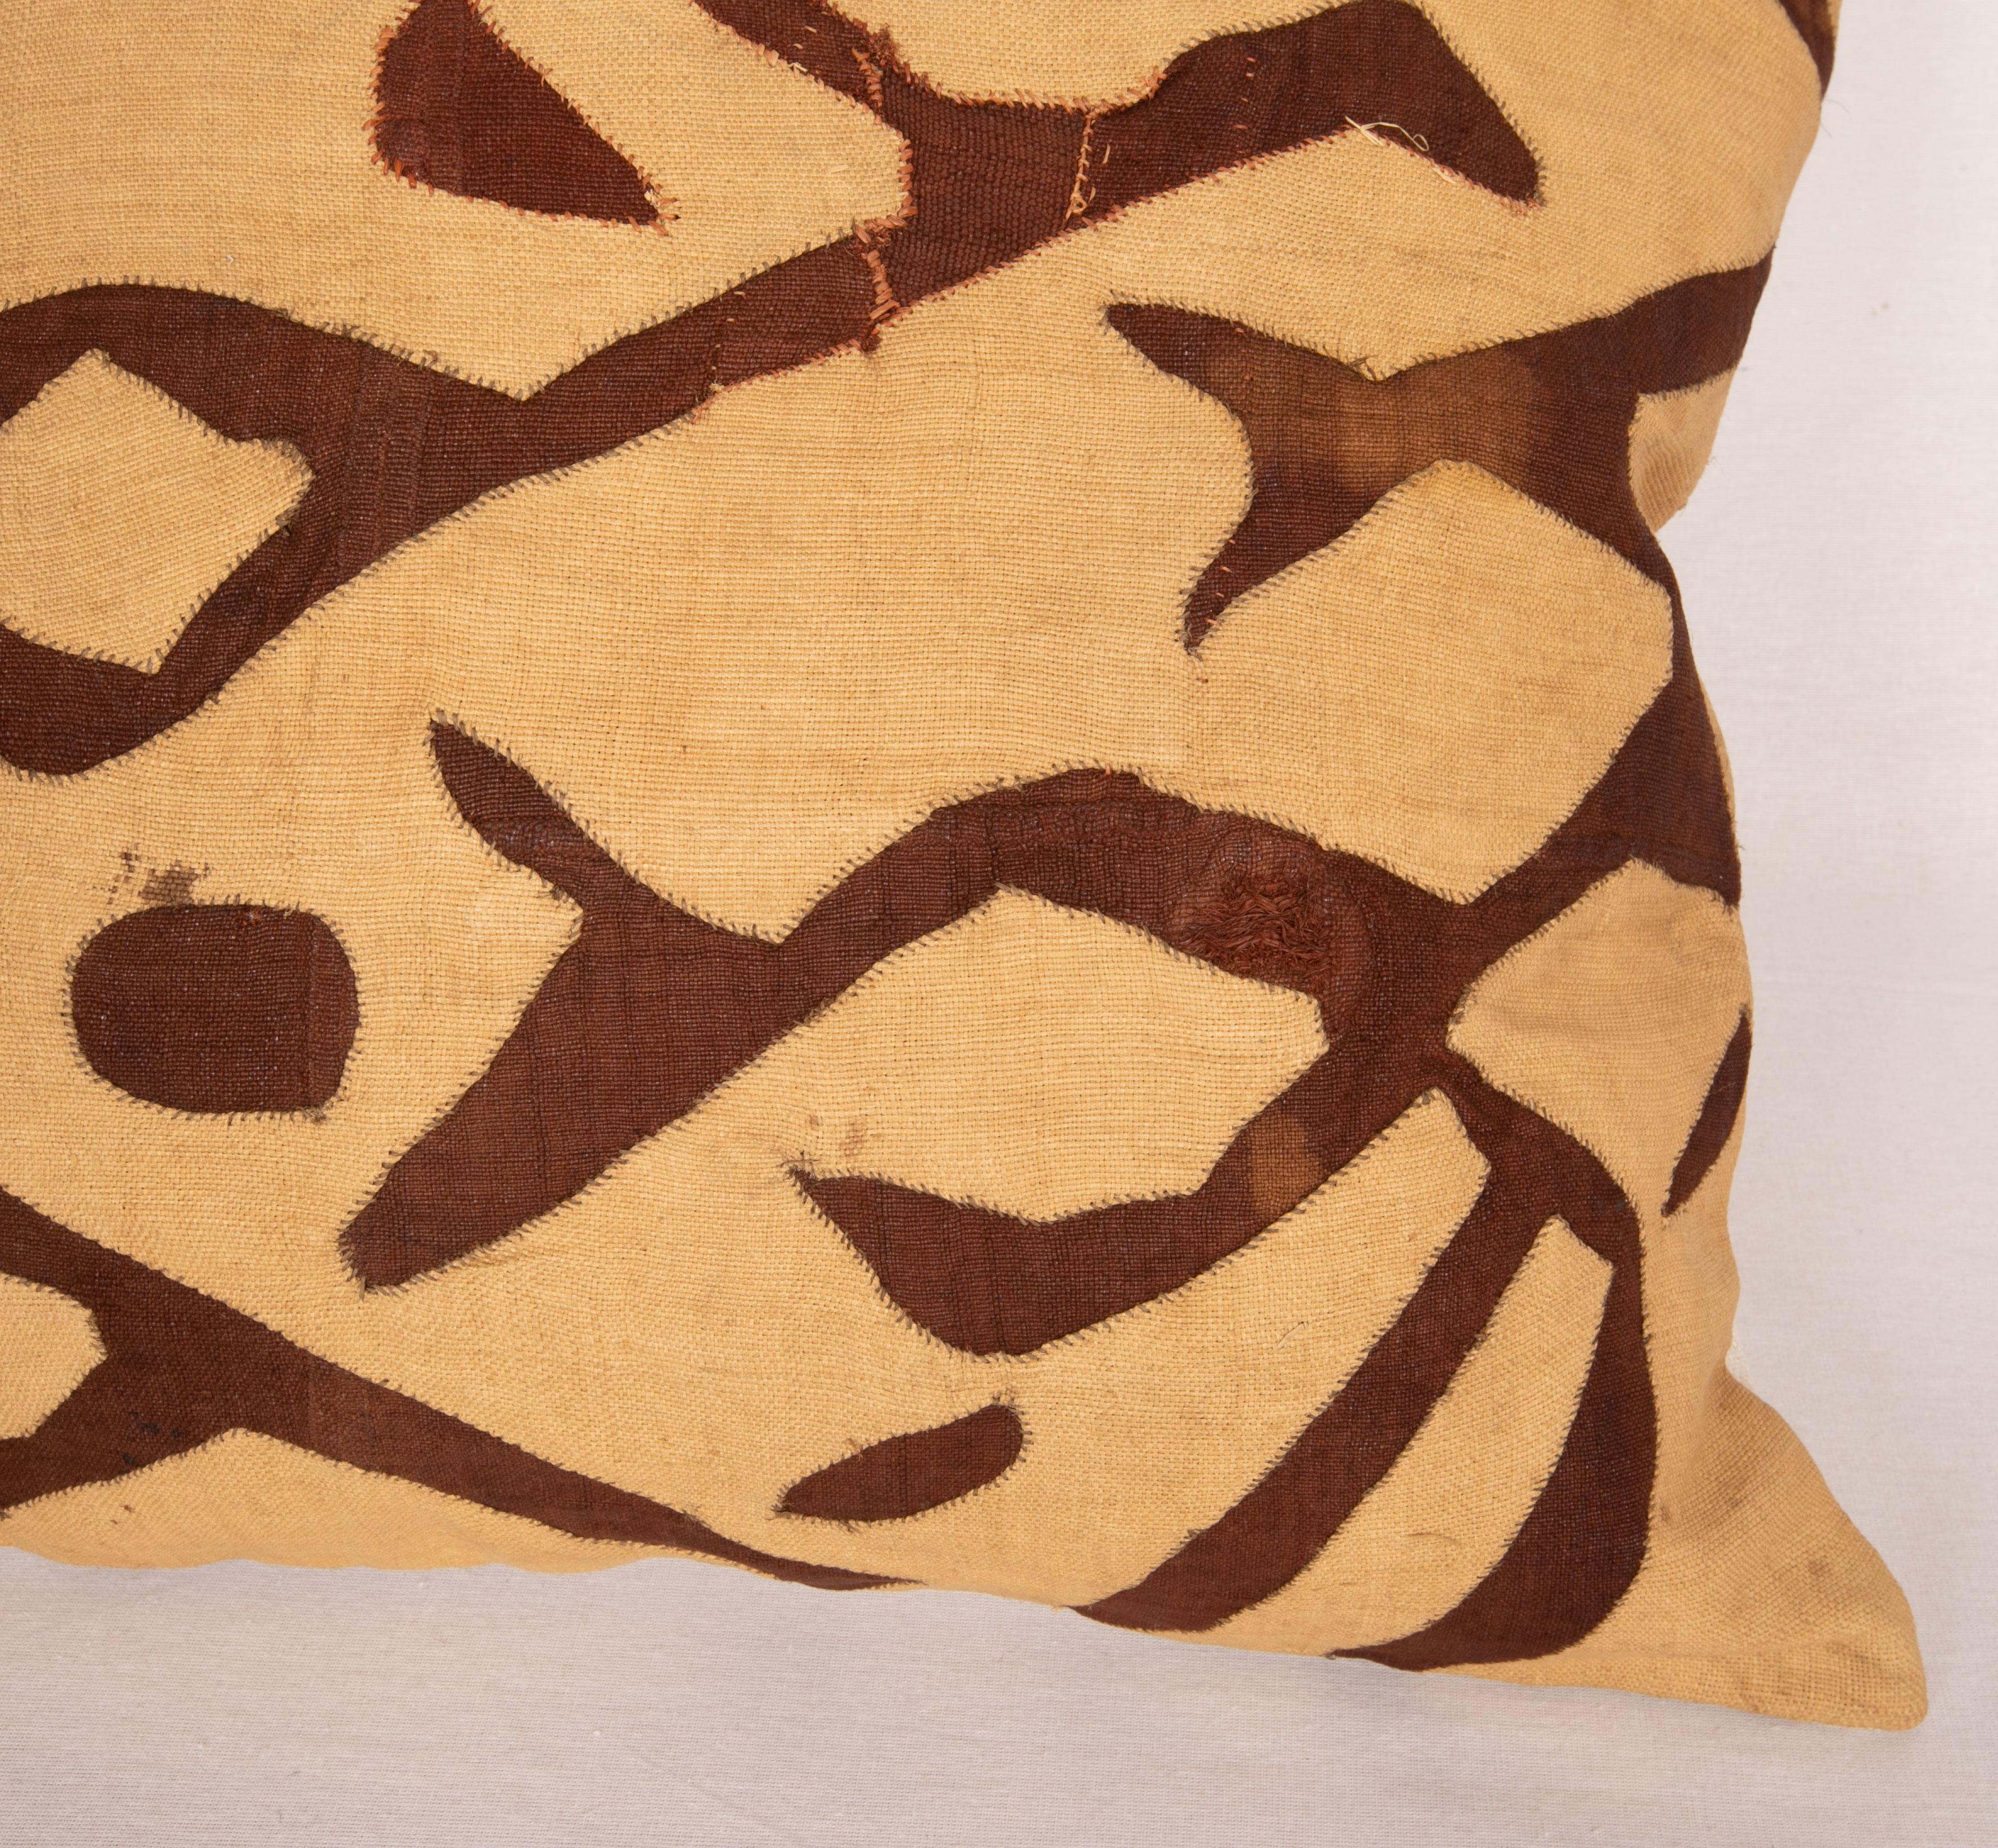 Hand-Woven African Kuba Cloth Raffia Pillow Case